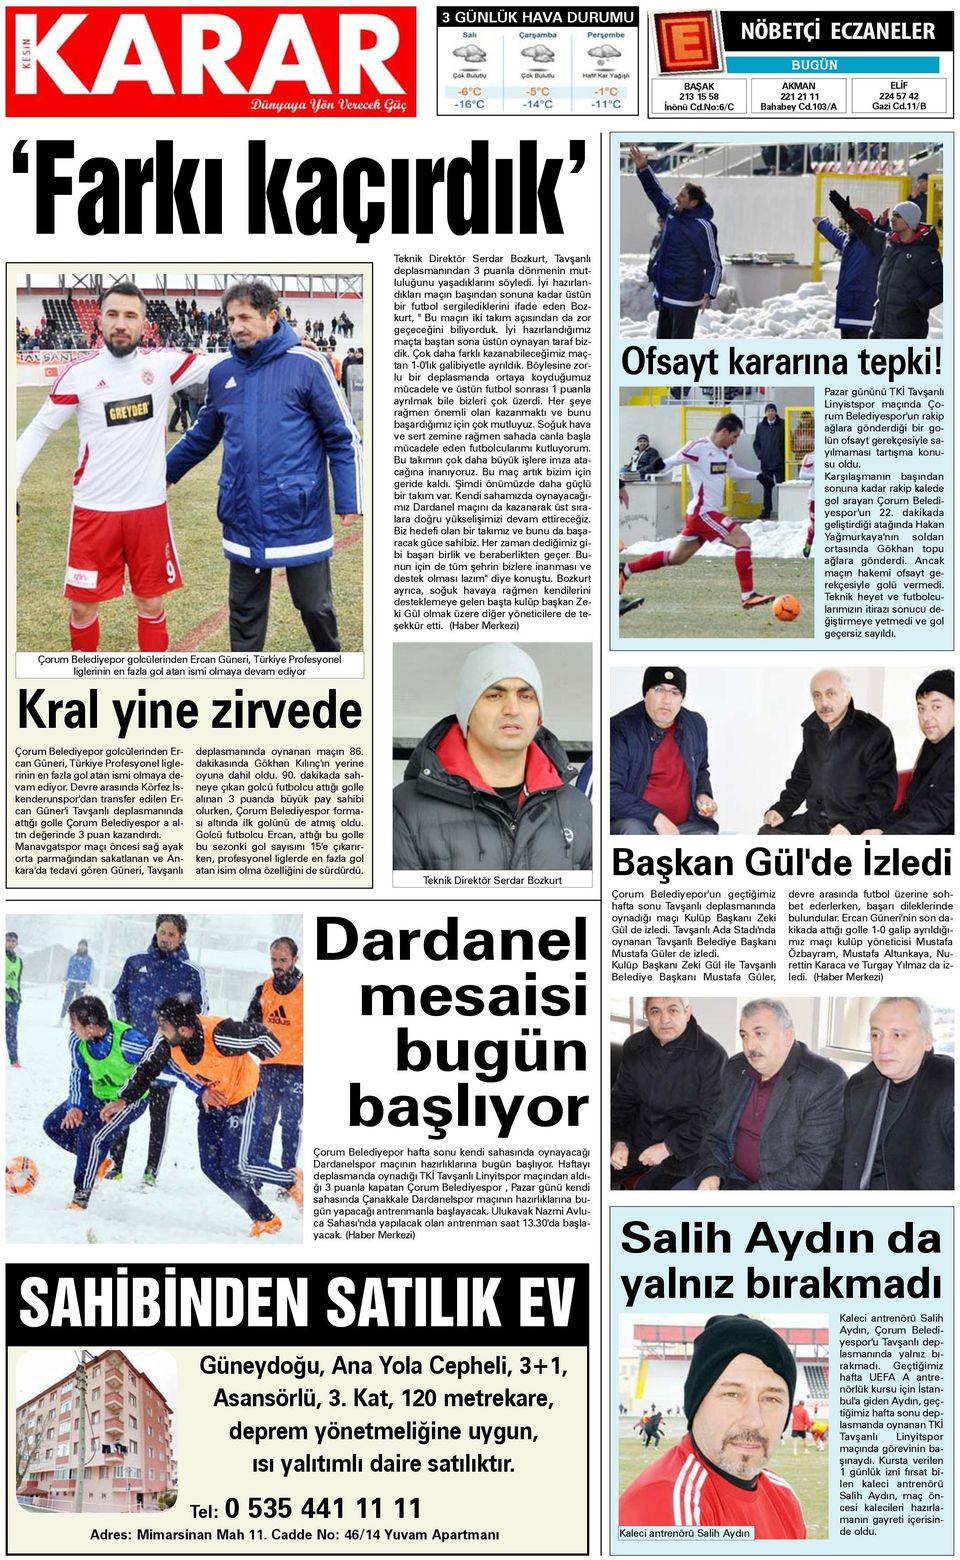 Güneri, Türkiye Profesyonel liglerinin en fazla gol atan ismi olmaya devam ediyor.